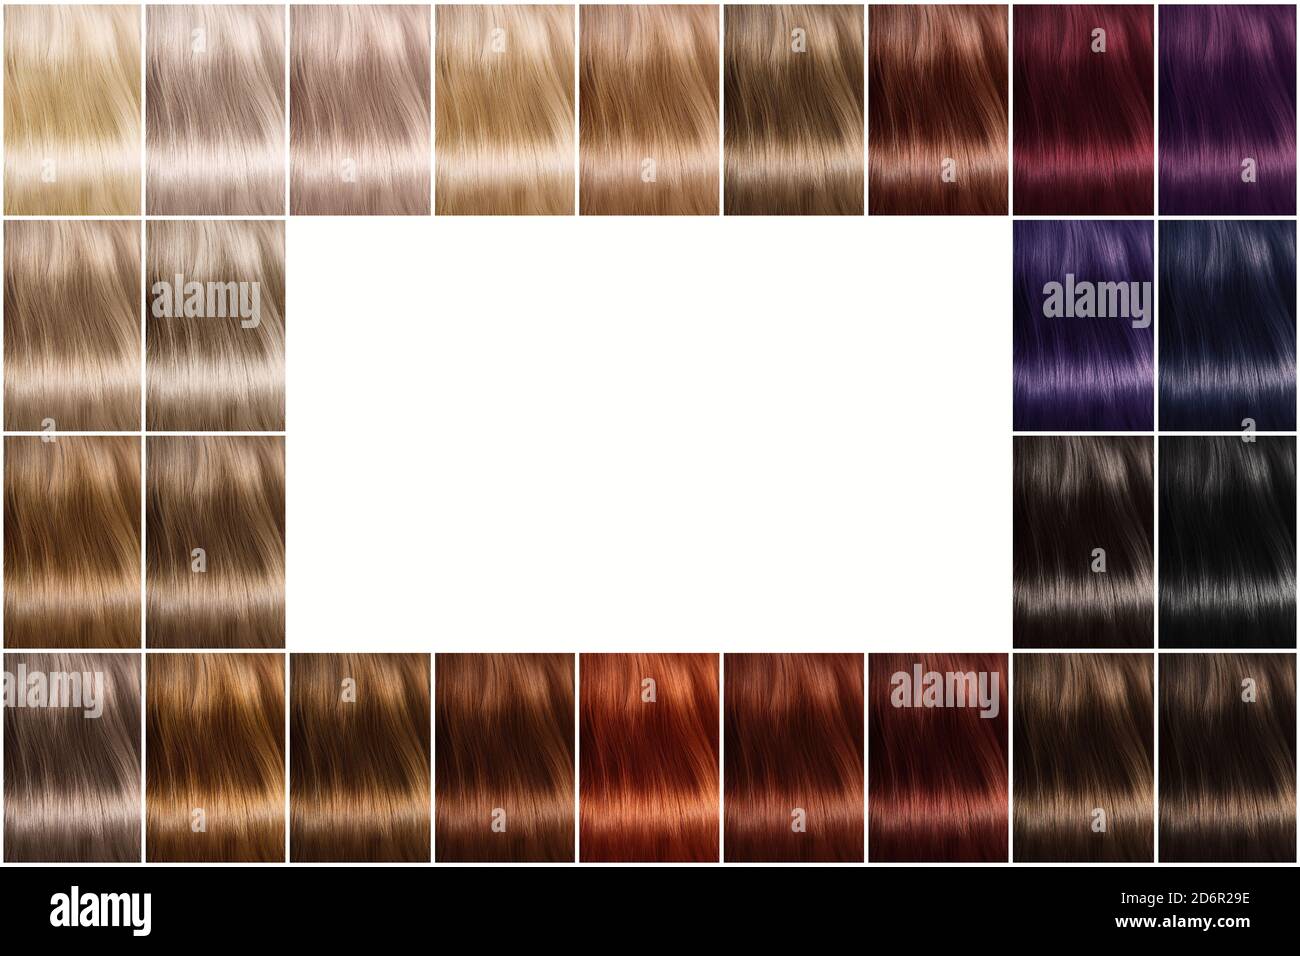 Paleta de colores de tintes para el cabello. Una paleta de colores de pelo  con una amplia selección de muestras. Hay un espacio vacío en el centro. Un  juego de tintes para